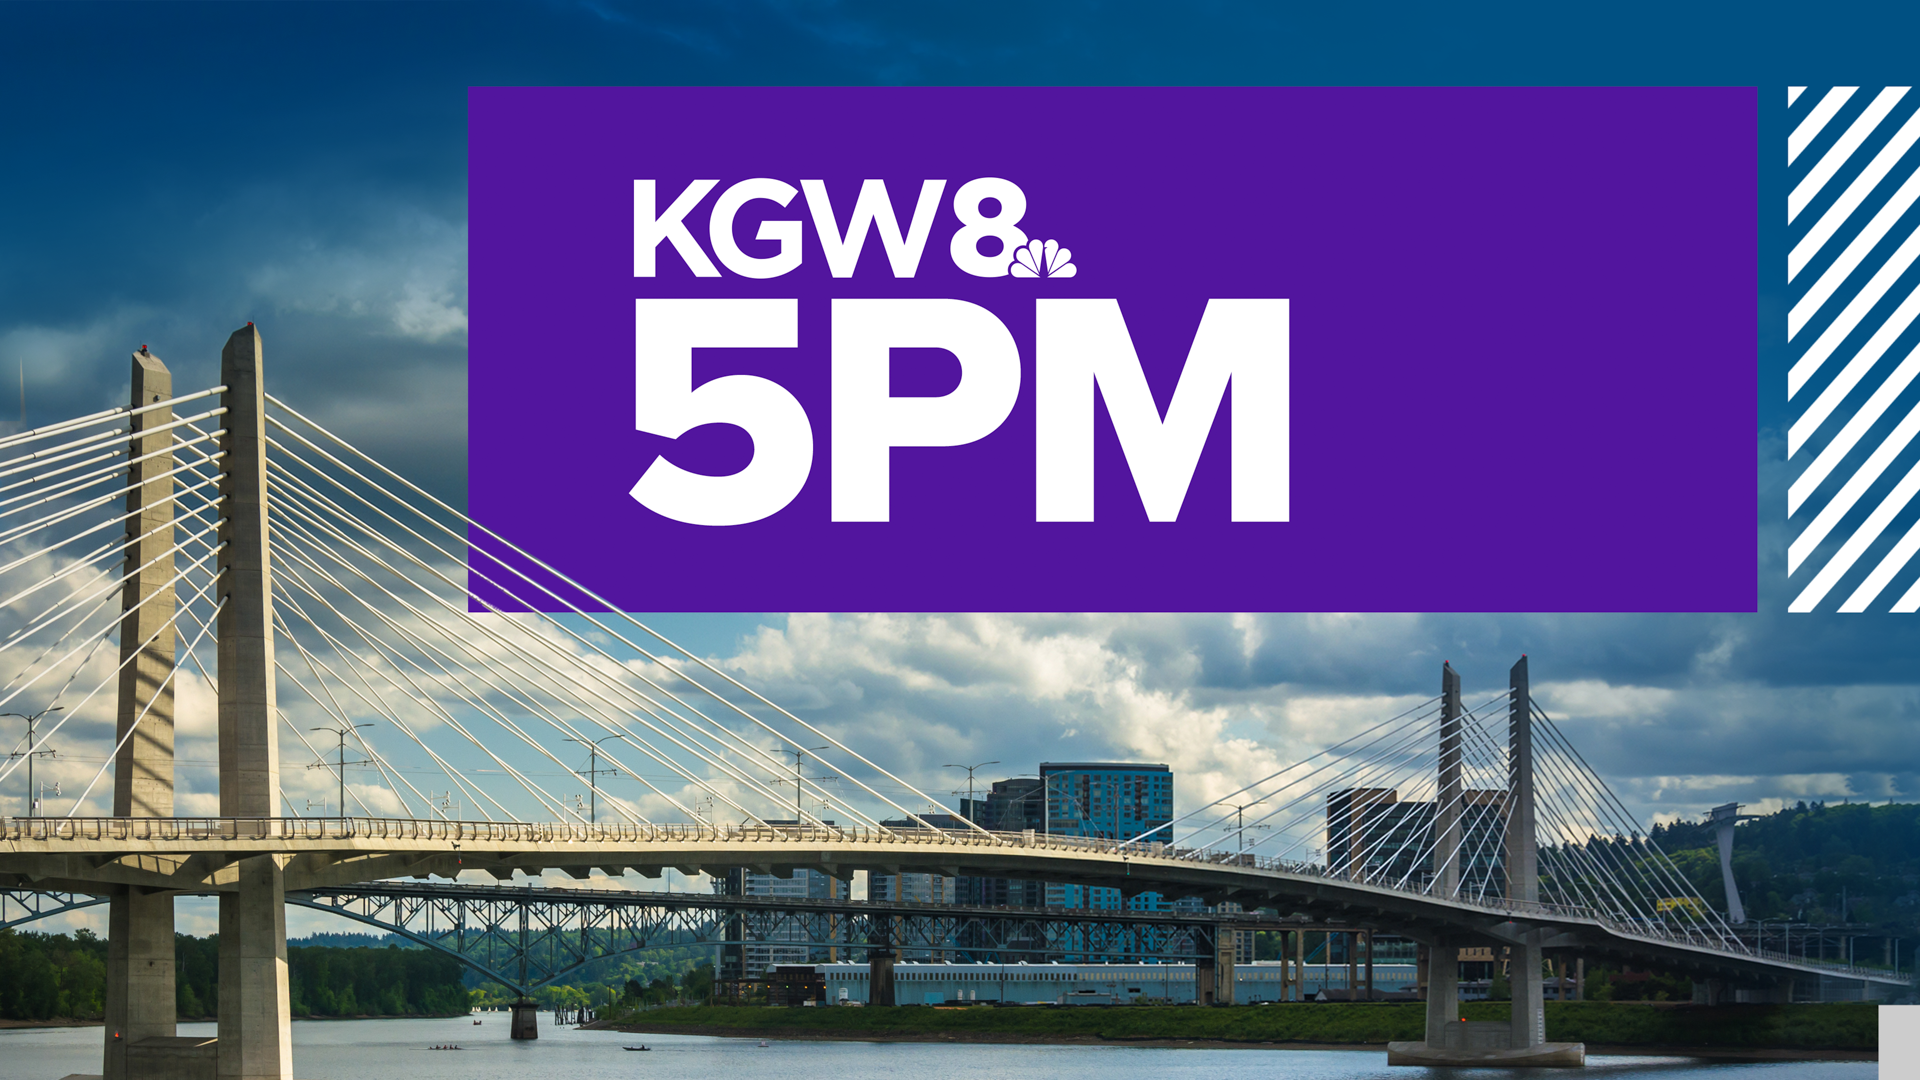 KGW Top Stories: 5 p.m., Thursday, August 11, 2022